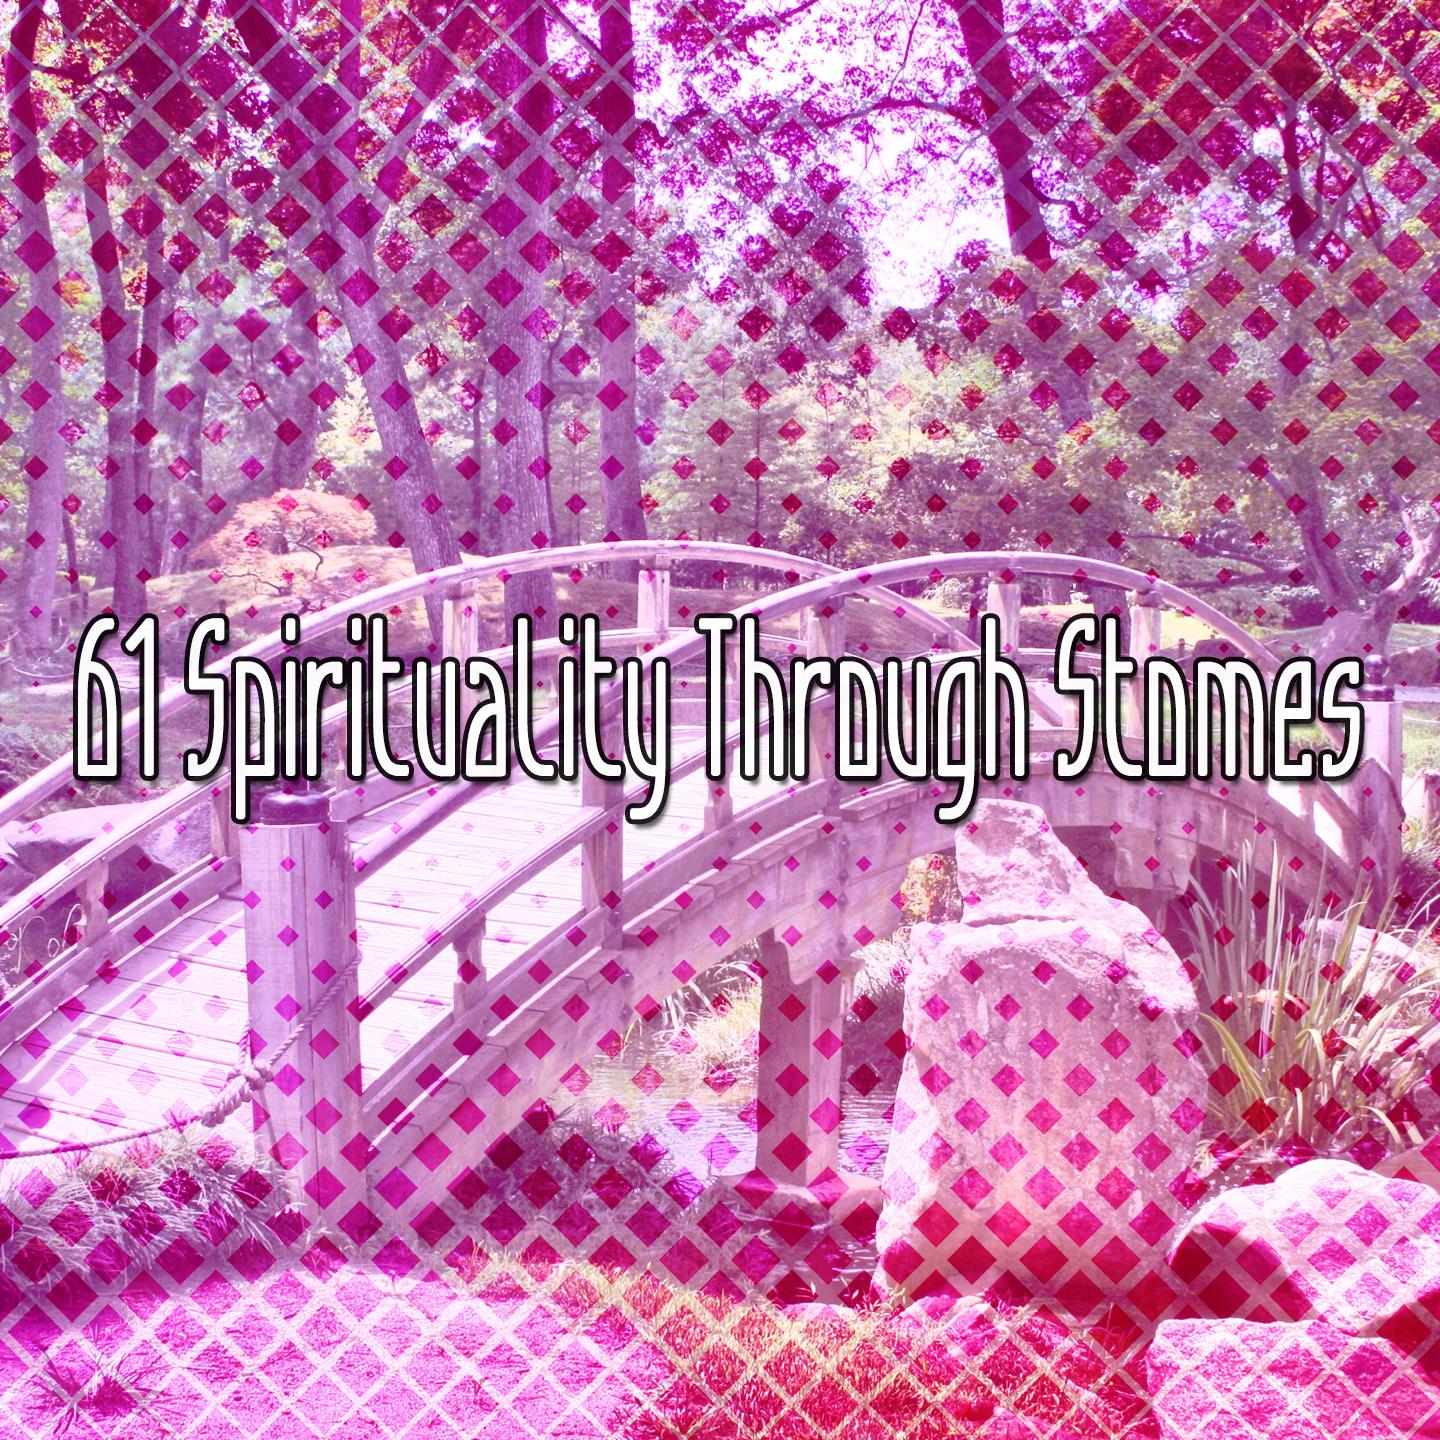 61 Spirituality Through Stomes